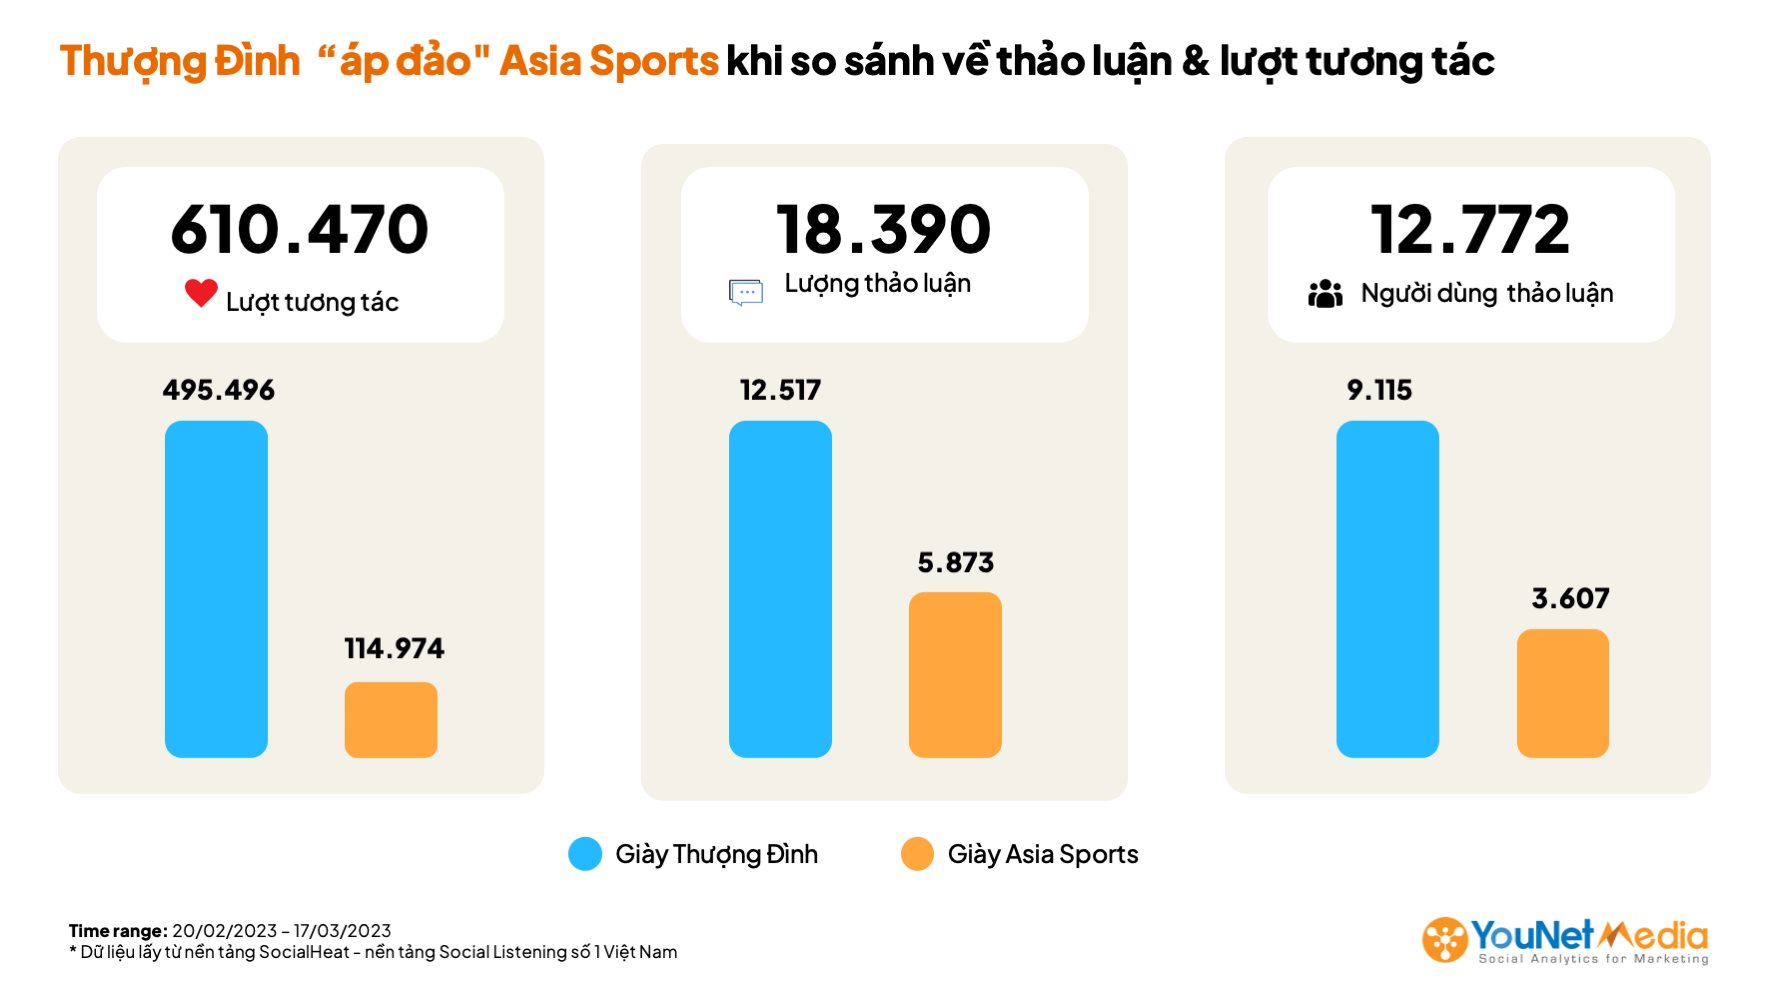 Cái kết từ nhầm lẫn của cộng đồng mạng: Giày Thượng Đình thu về lượng tương tác gấp hơn 4 lần Asia Sports - Ảnh 4.